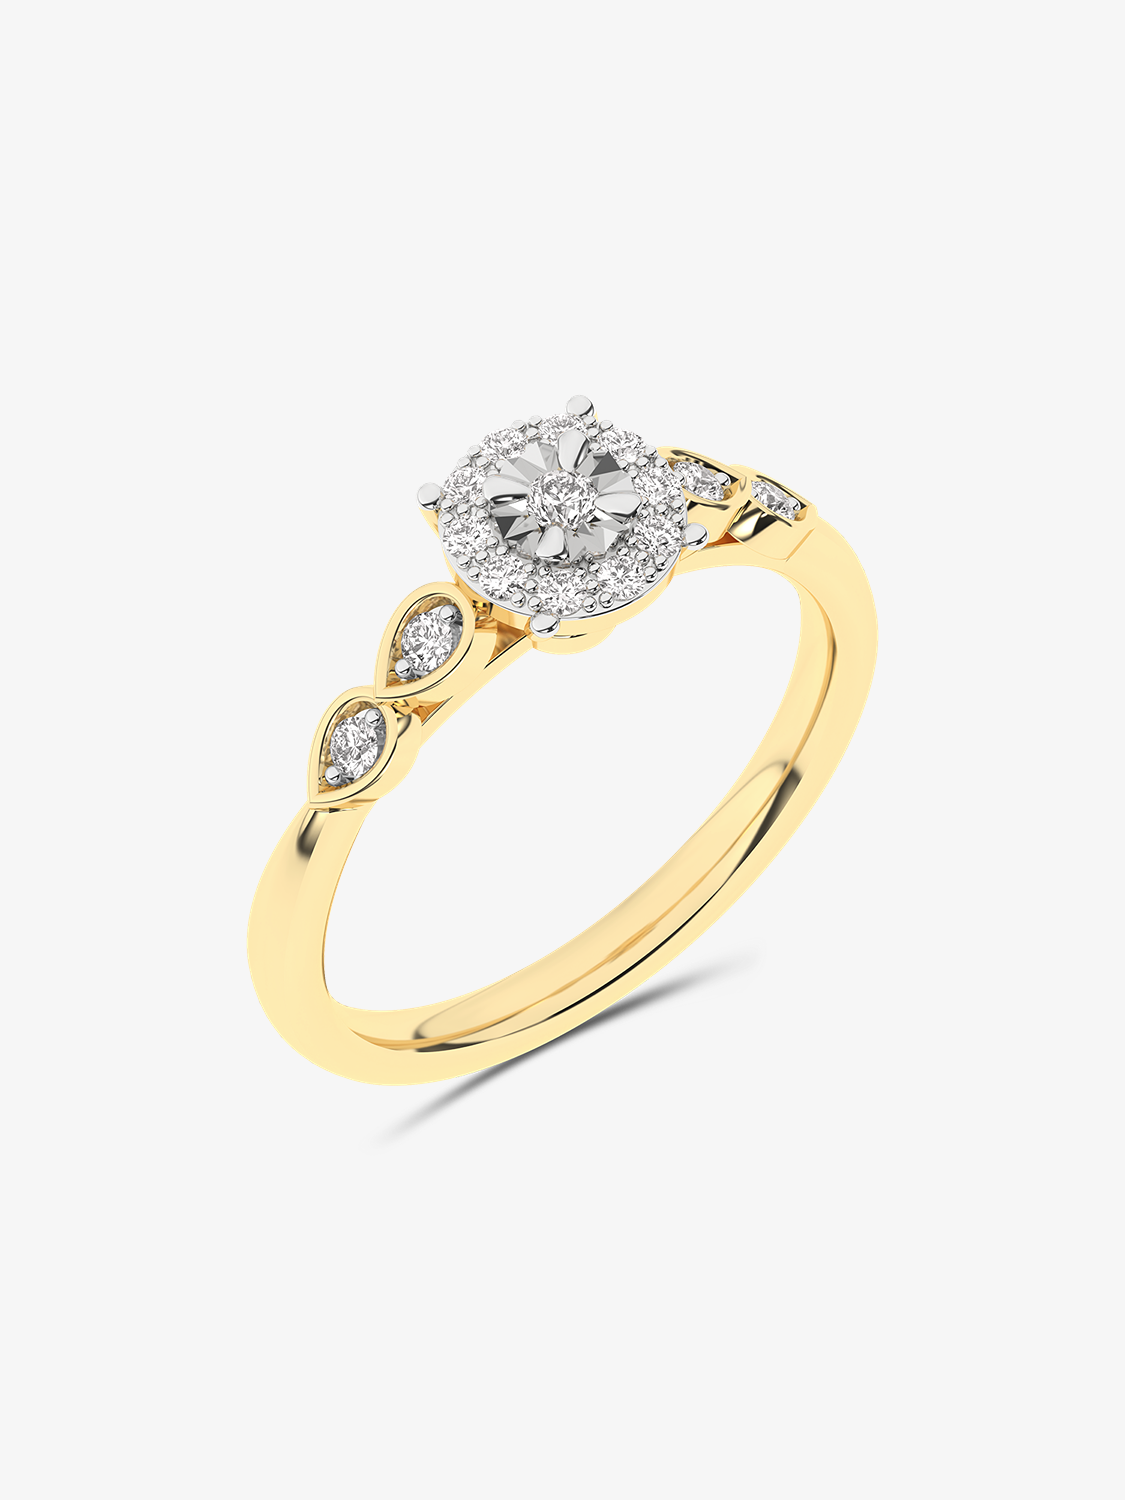 Złoty pierścionek z brylantami - Star żółty - Venetia Jewels - 14K złoto z brylantami